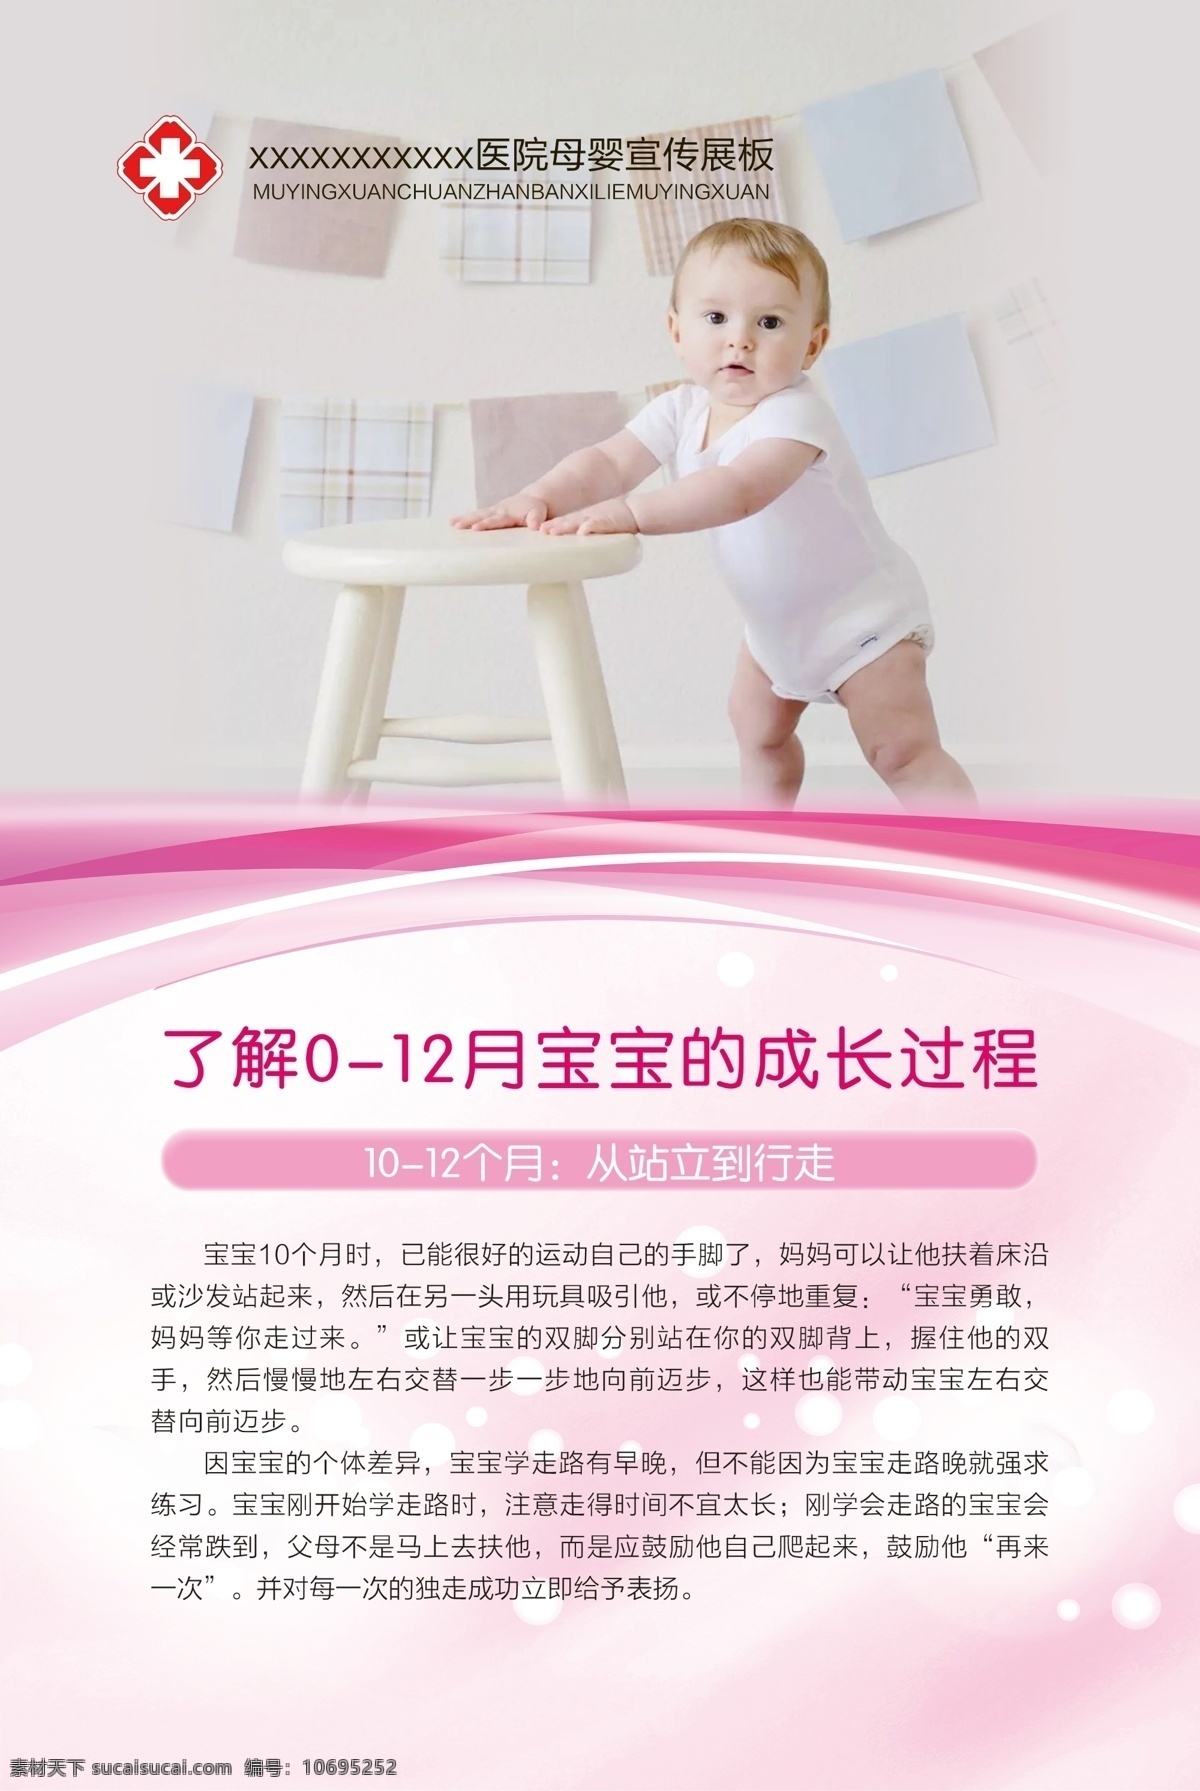 母婴宣传展板 母婴 婴儿发育 展板 医院 宝宝成长过程 dm宣传单